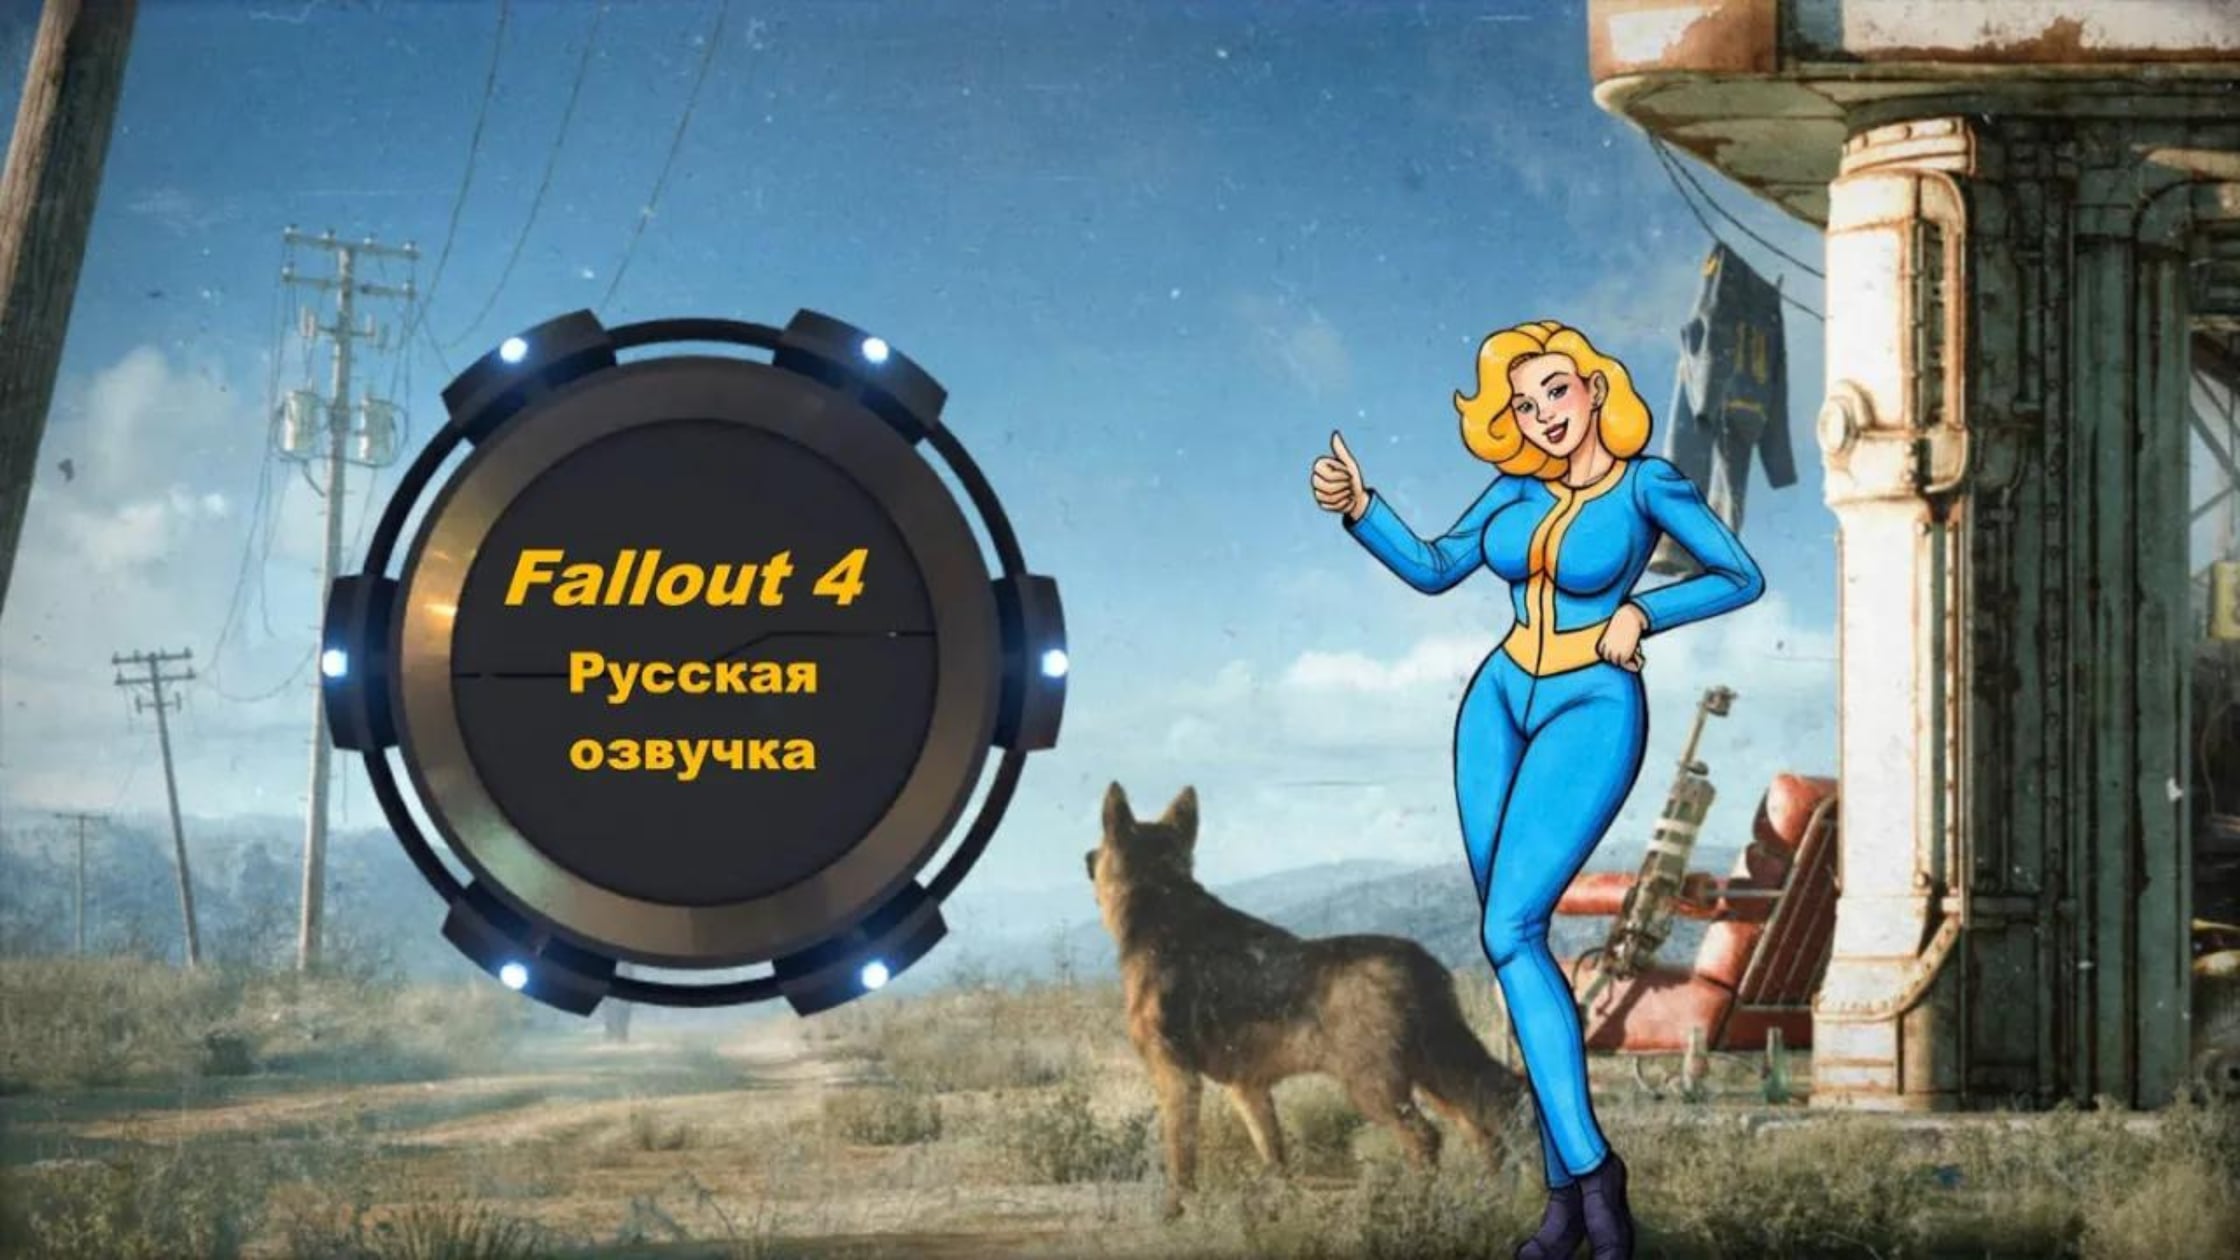 какие имена озвучены в fallout 4 фото 28